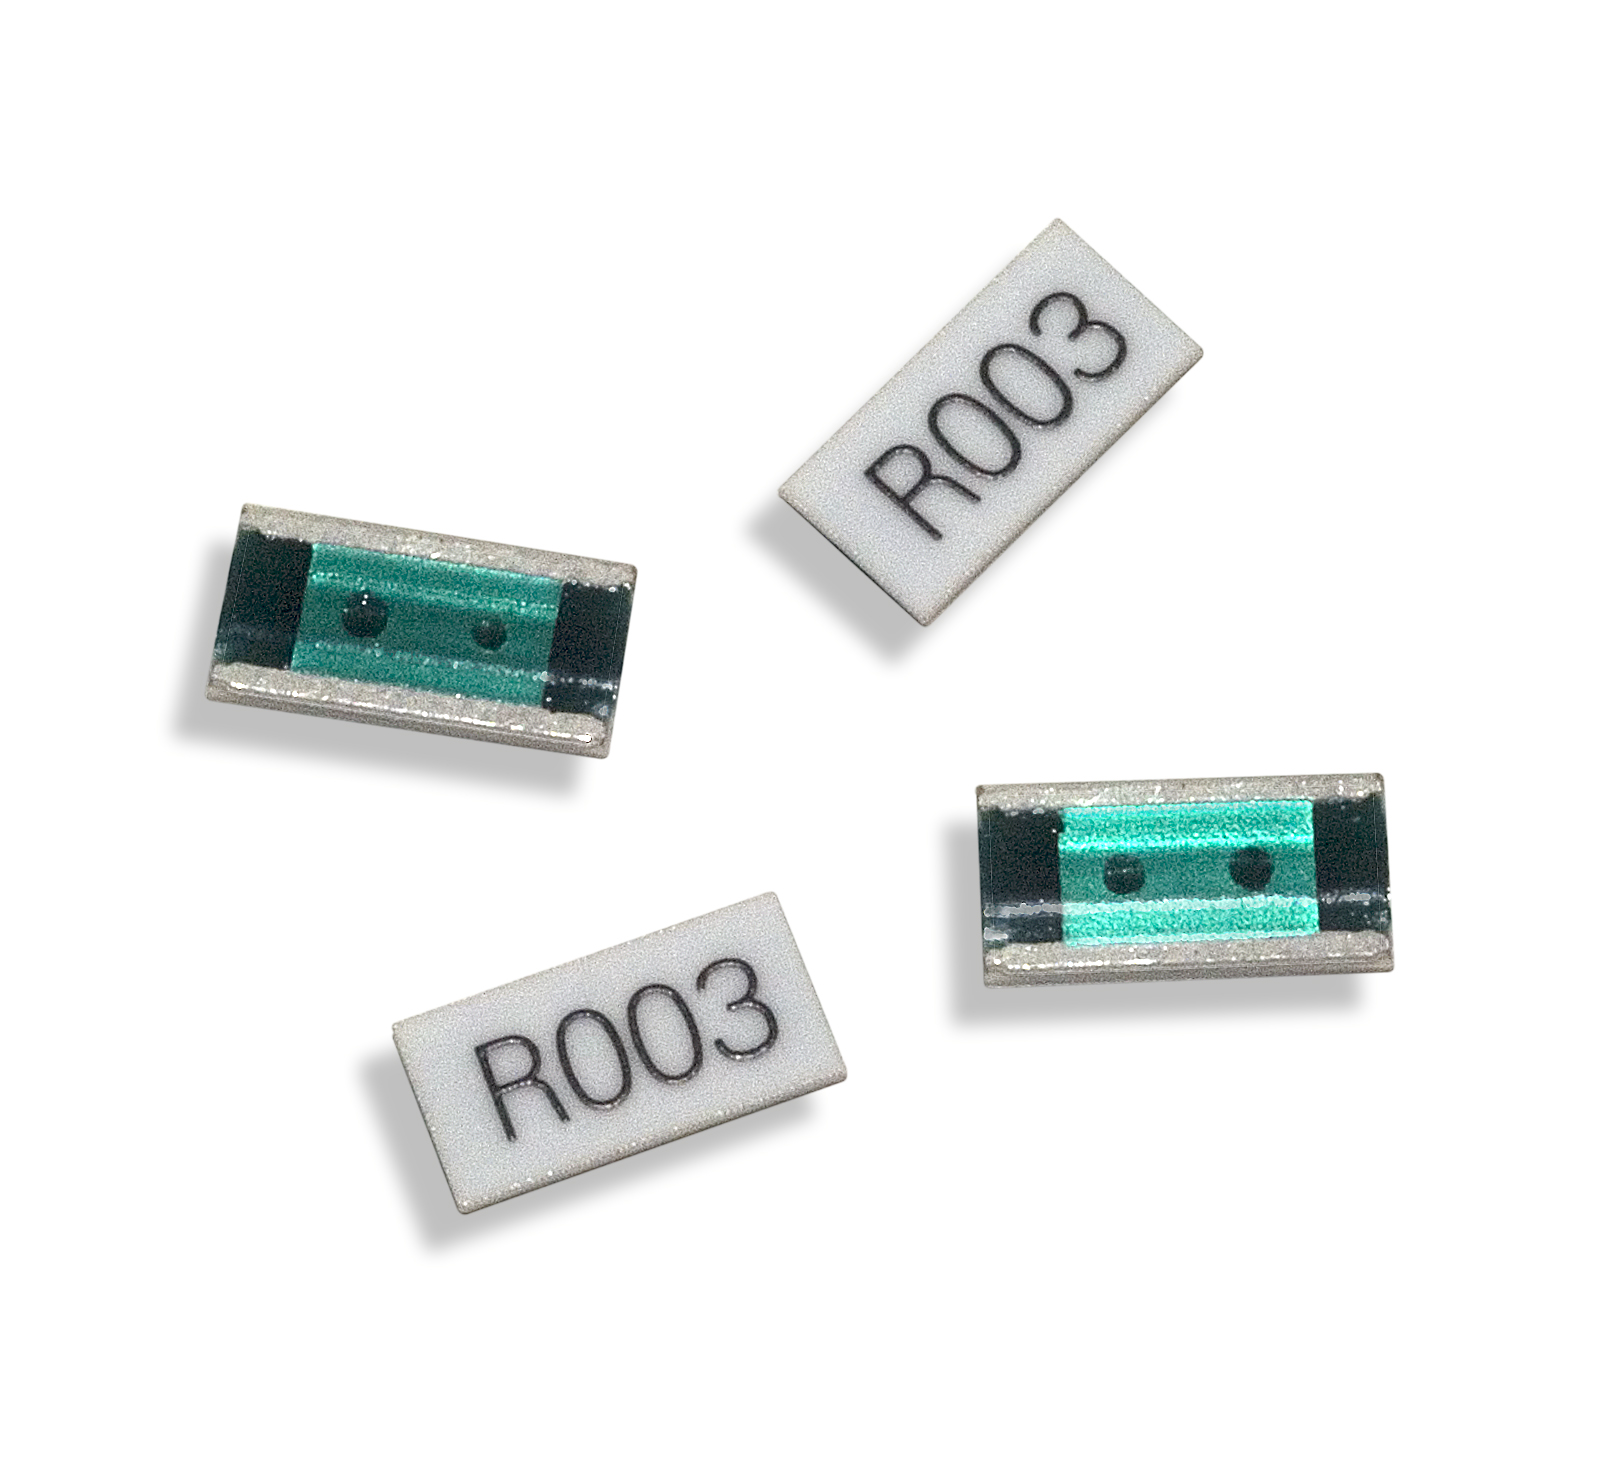 Current Sense Resistors SMD 0.5ohm 1% 1/2 W 1000 pieces 